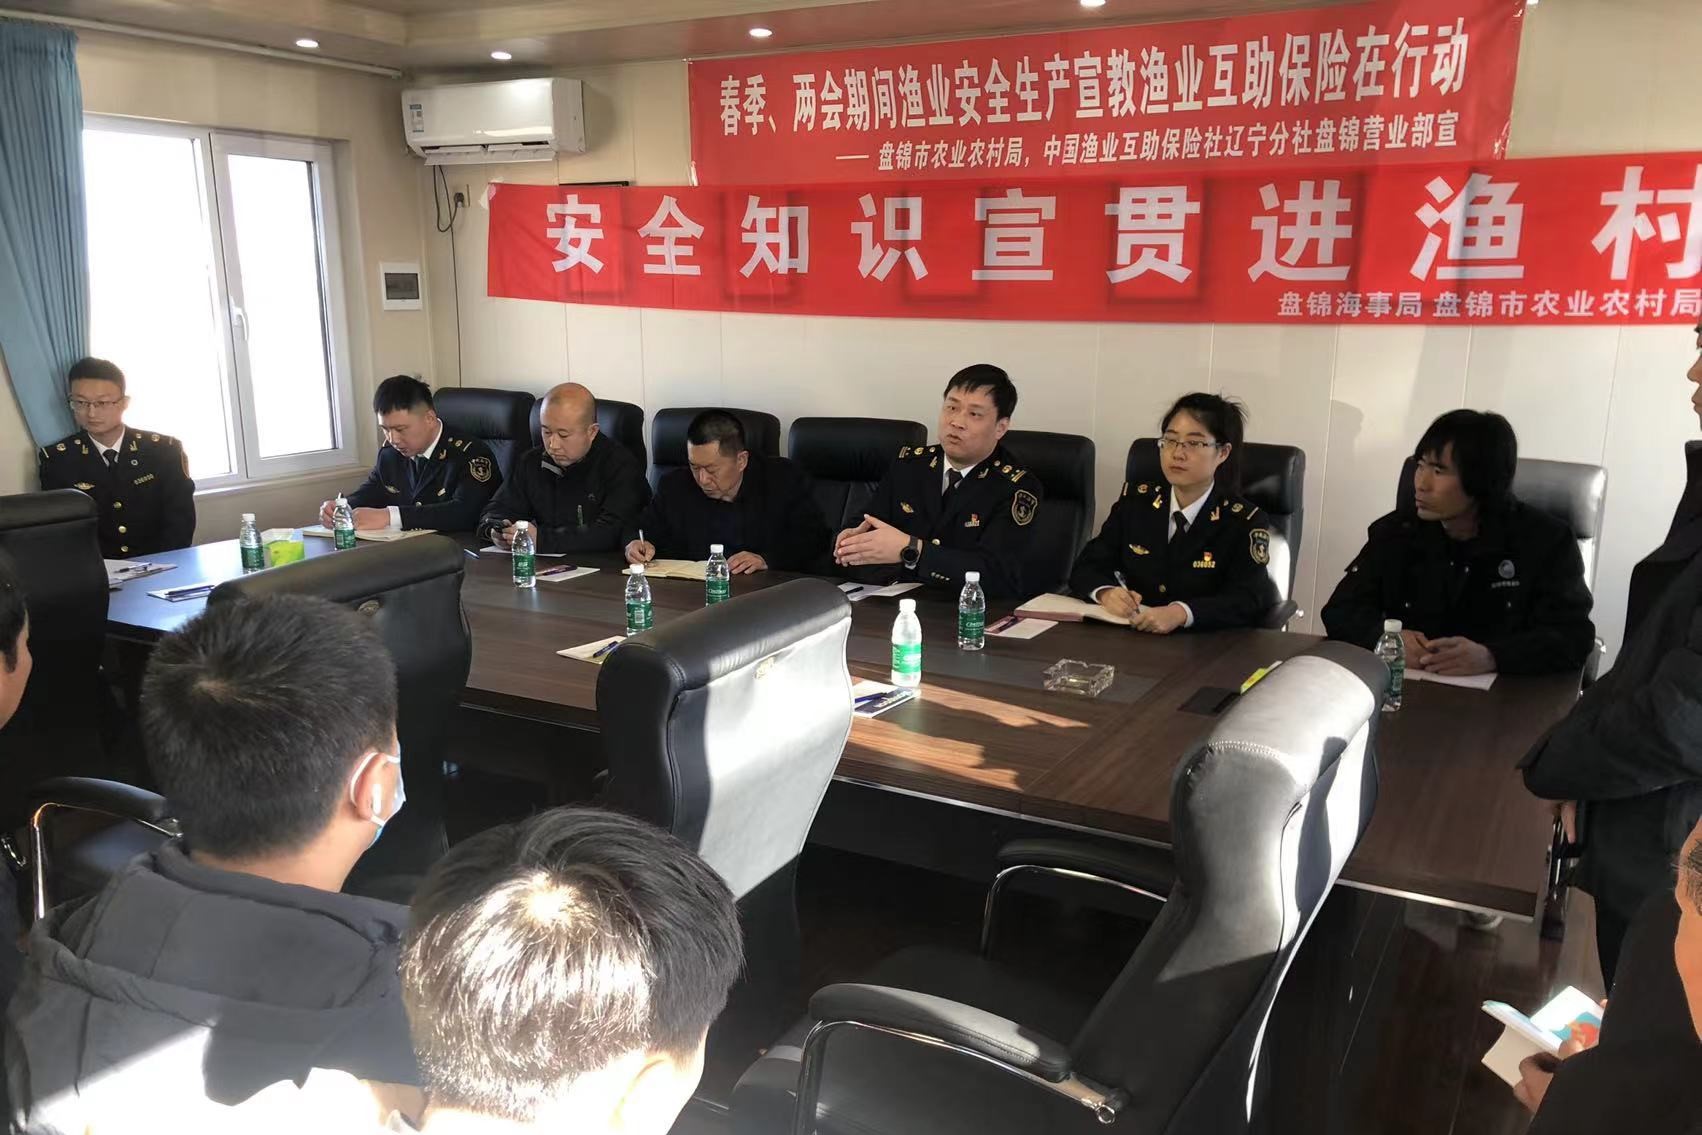 盘锦市渔业协会联合召开海事安全培训会议  